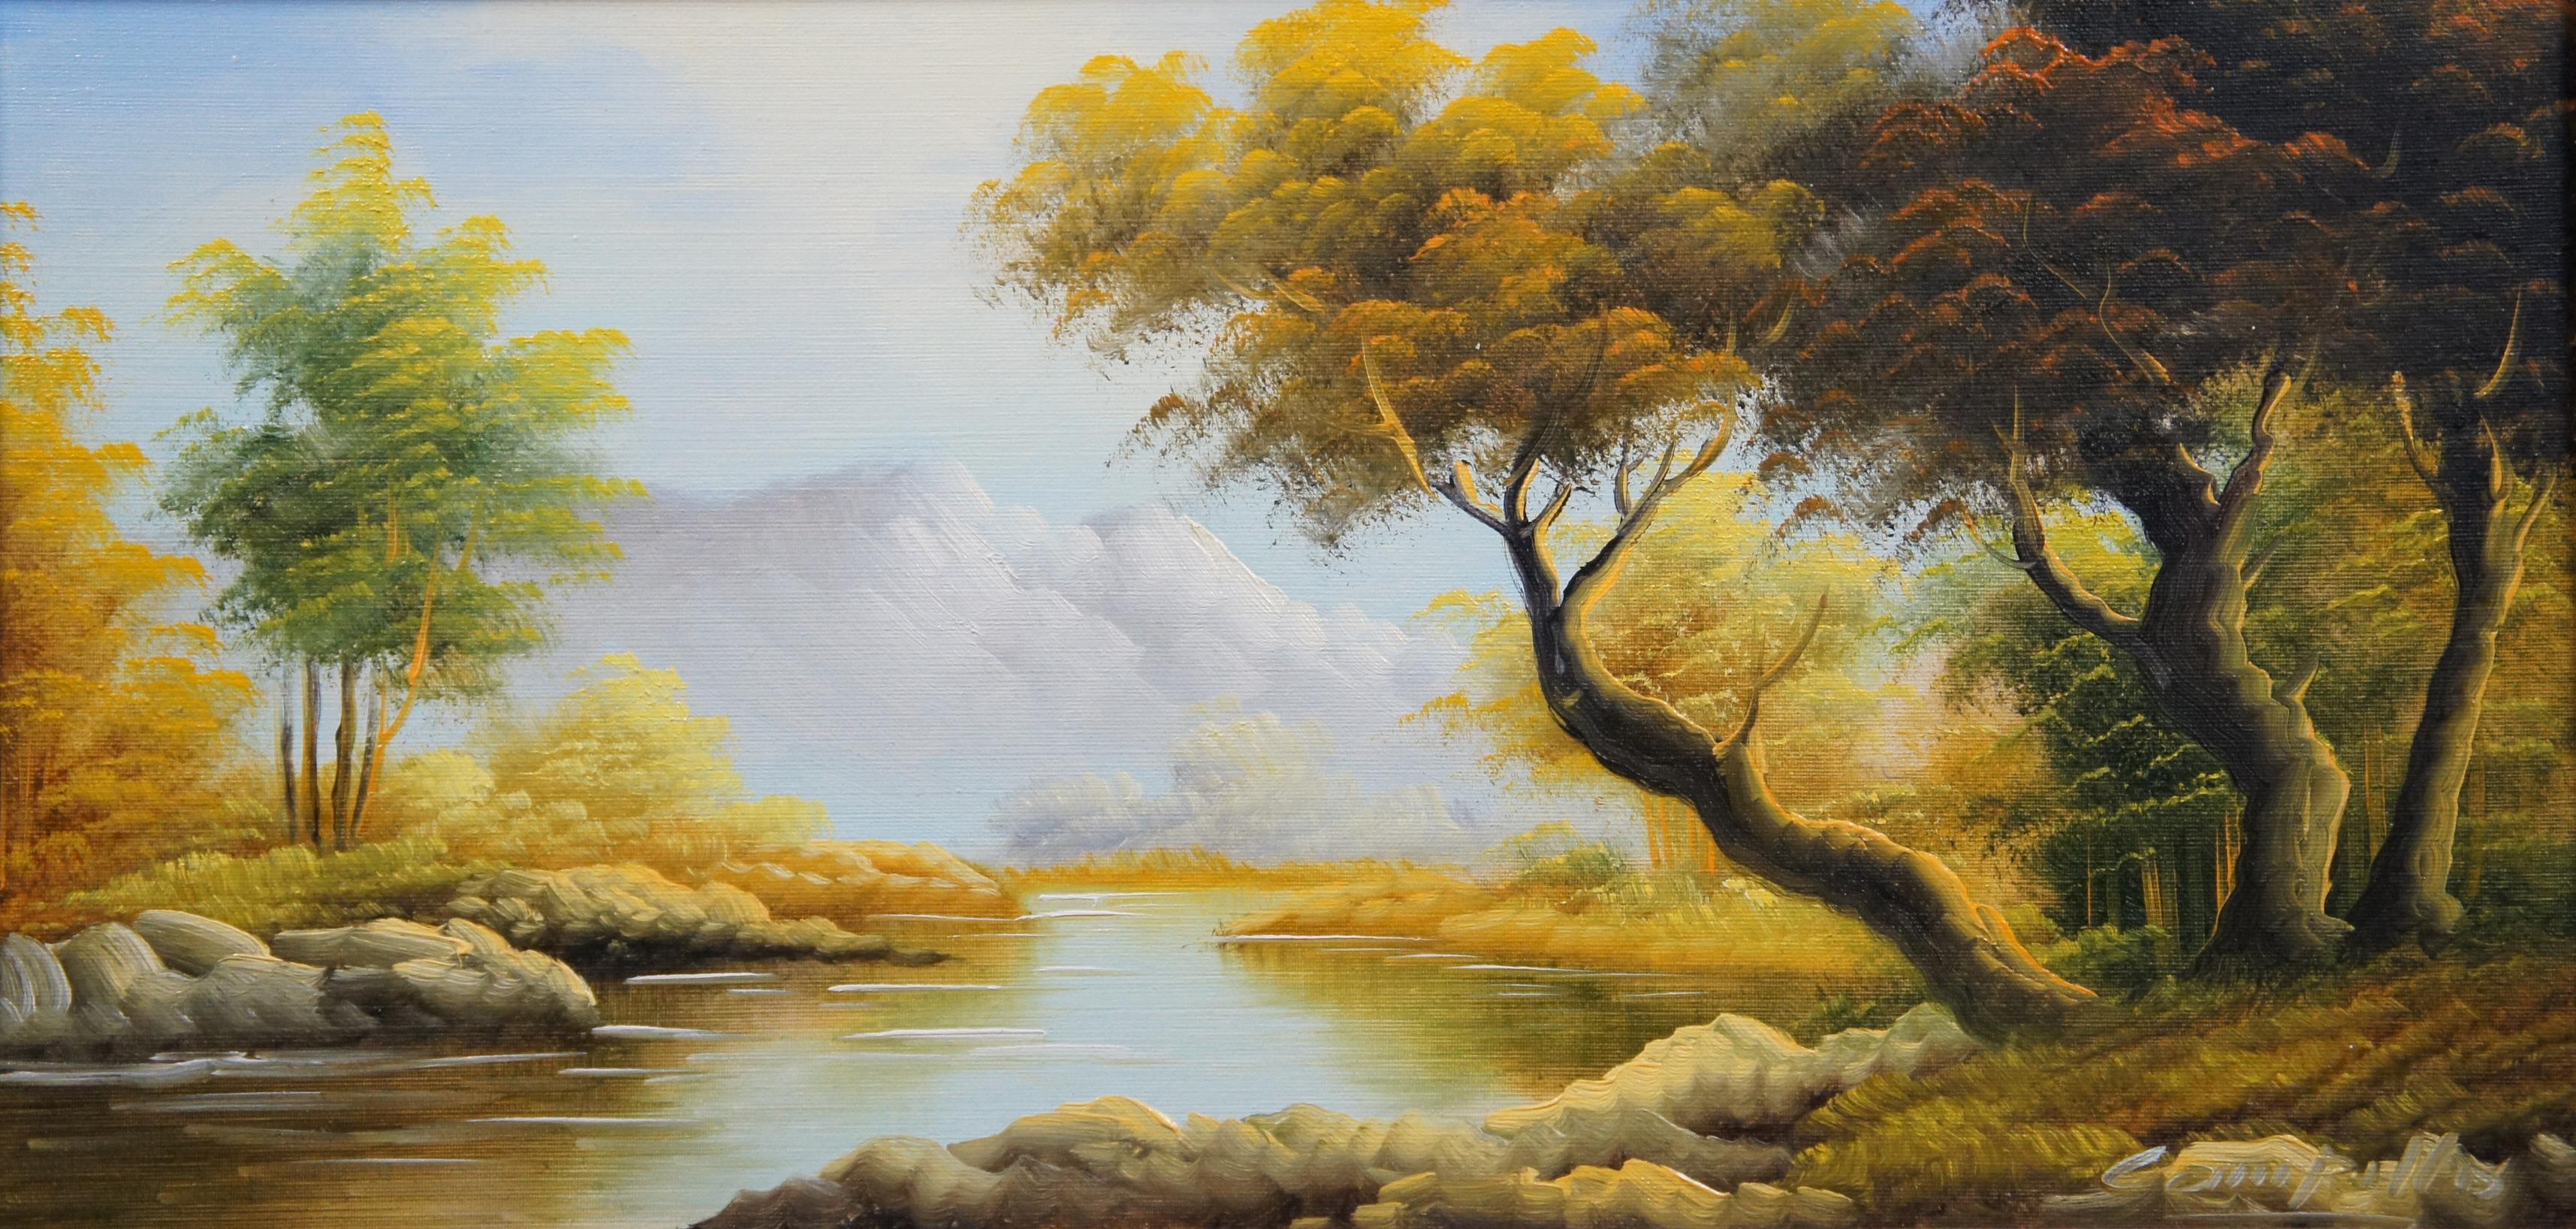 Peinture à l'huile originale sur toile de Campillo - Paysage de montagnes de la rivière Autumn 2